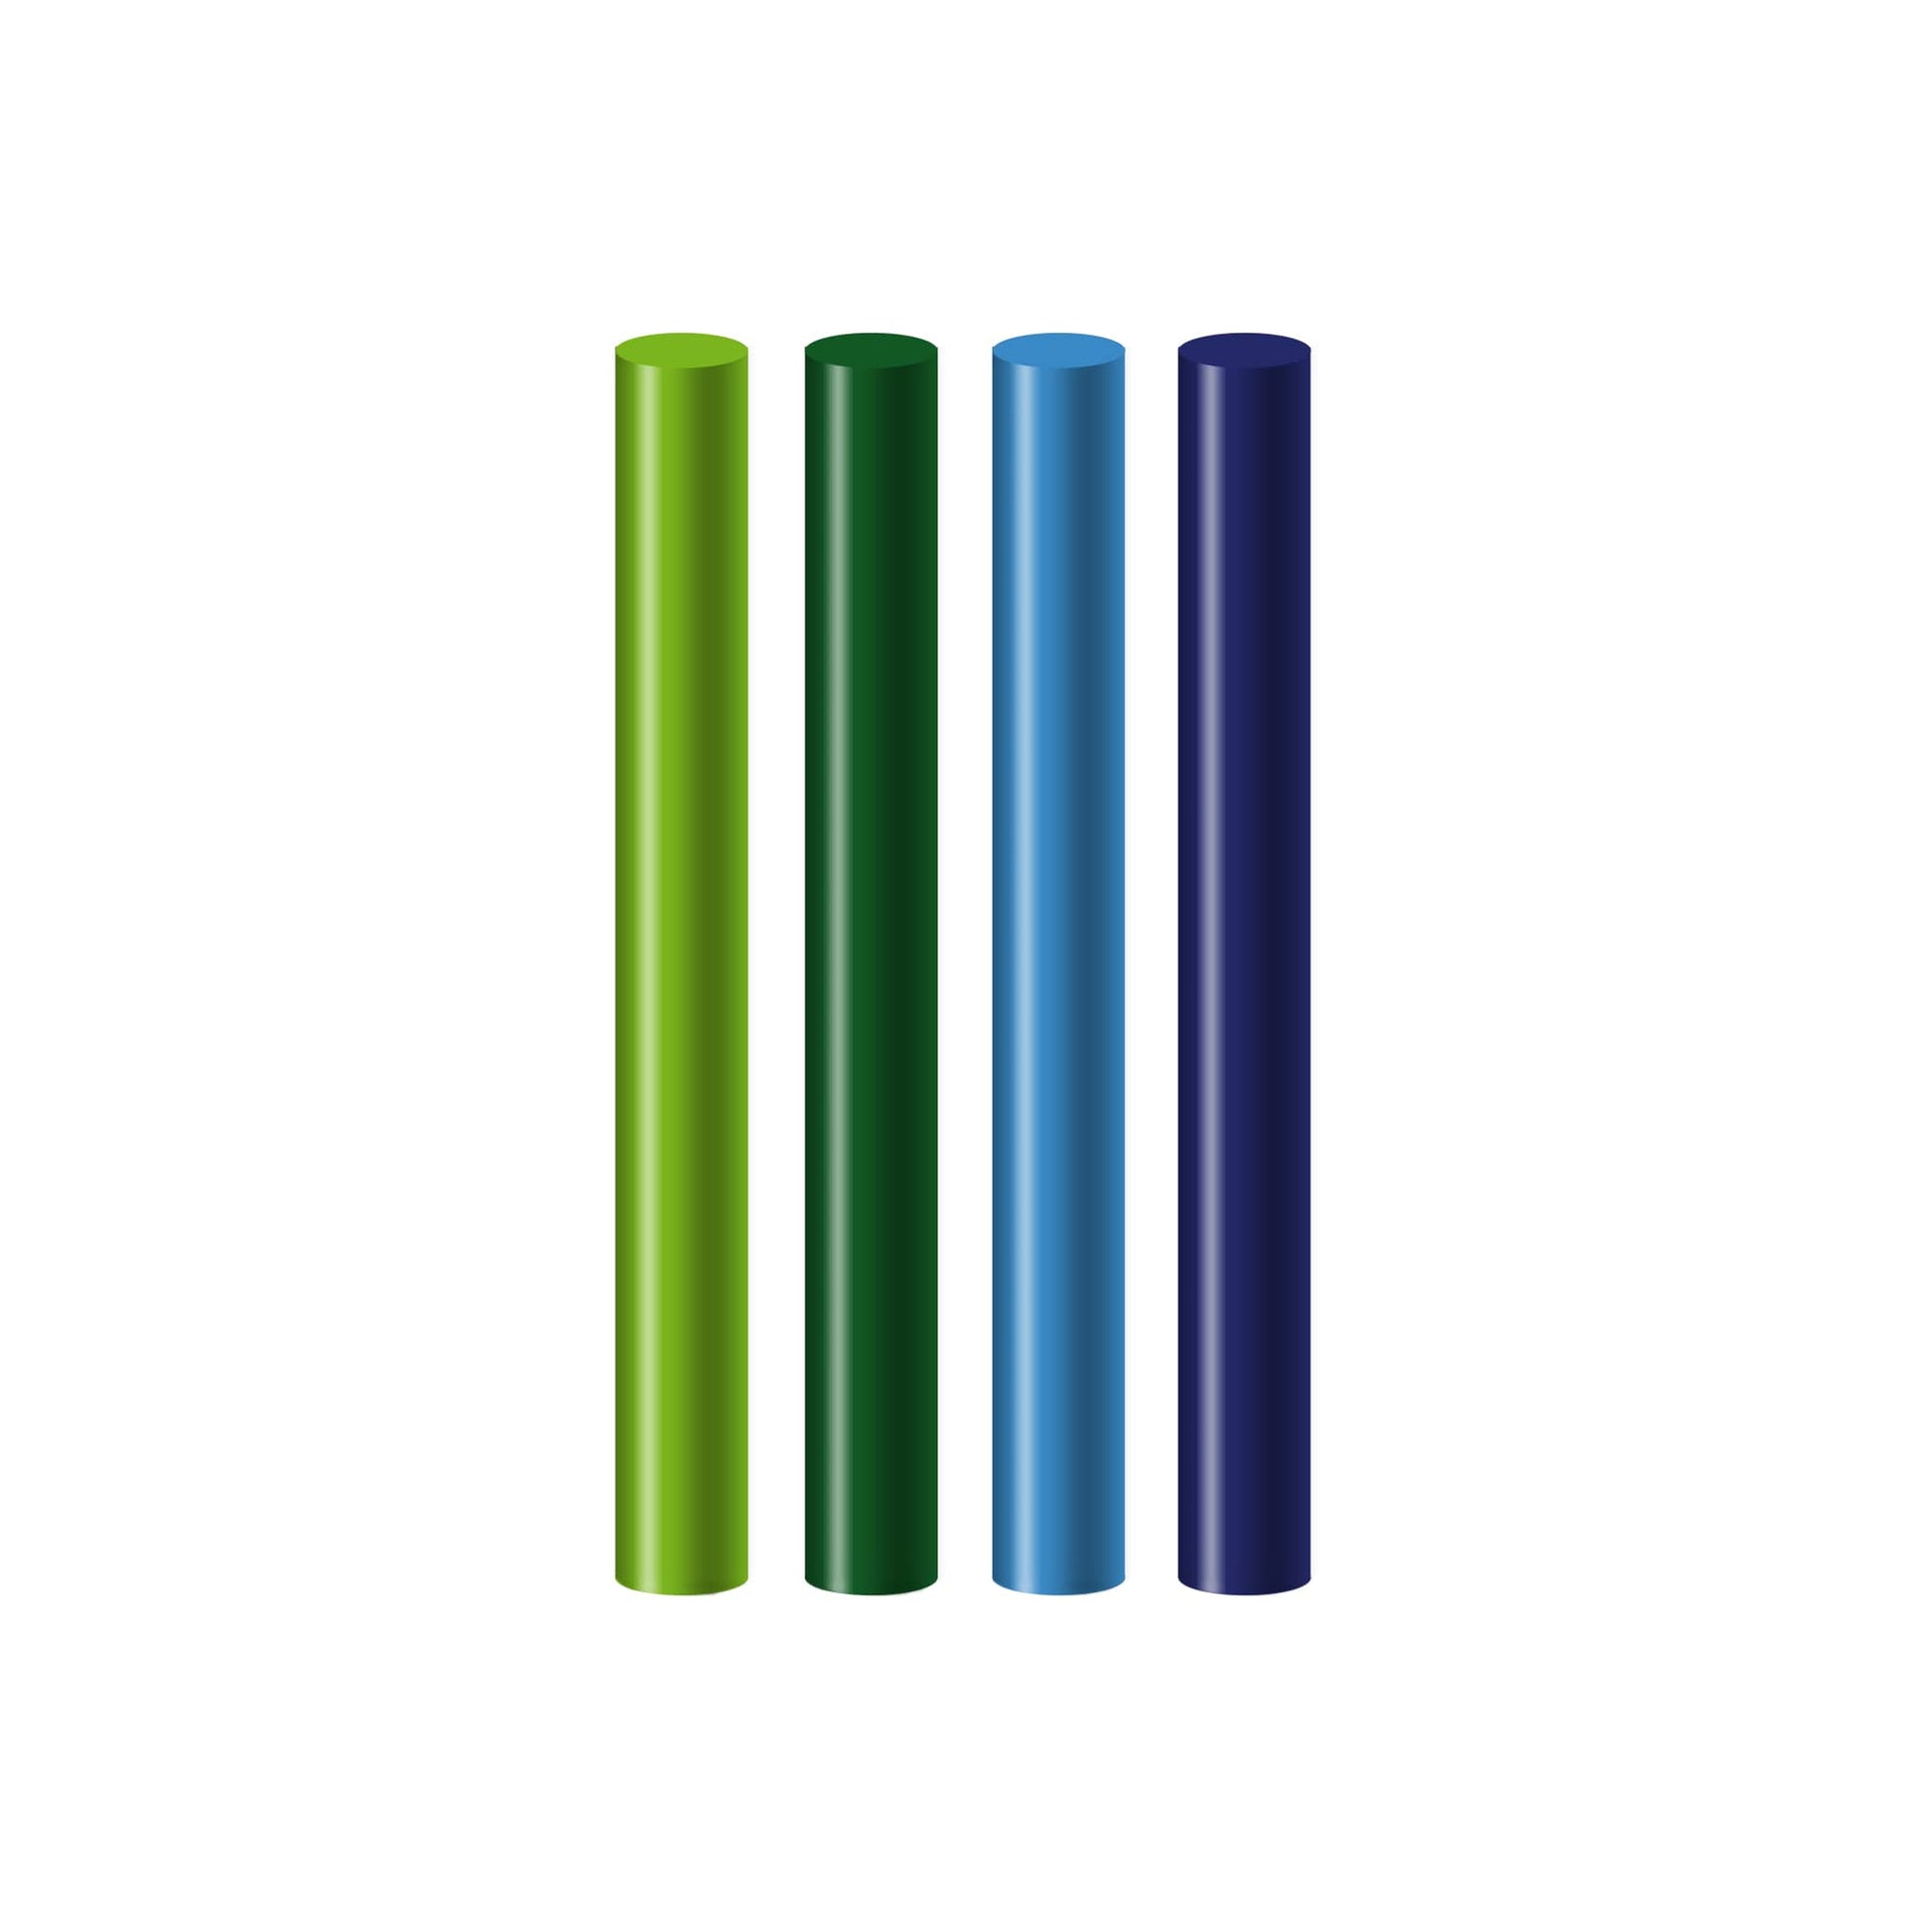 Seccorell-Farbstäbchen in kühlen Grundfarben, optimal für atmosphärische und beruhigende Kunstwerke.